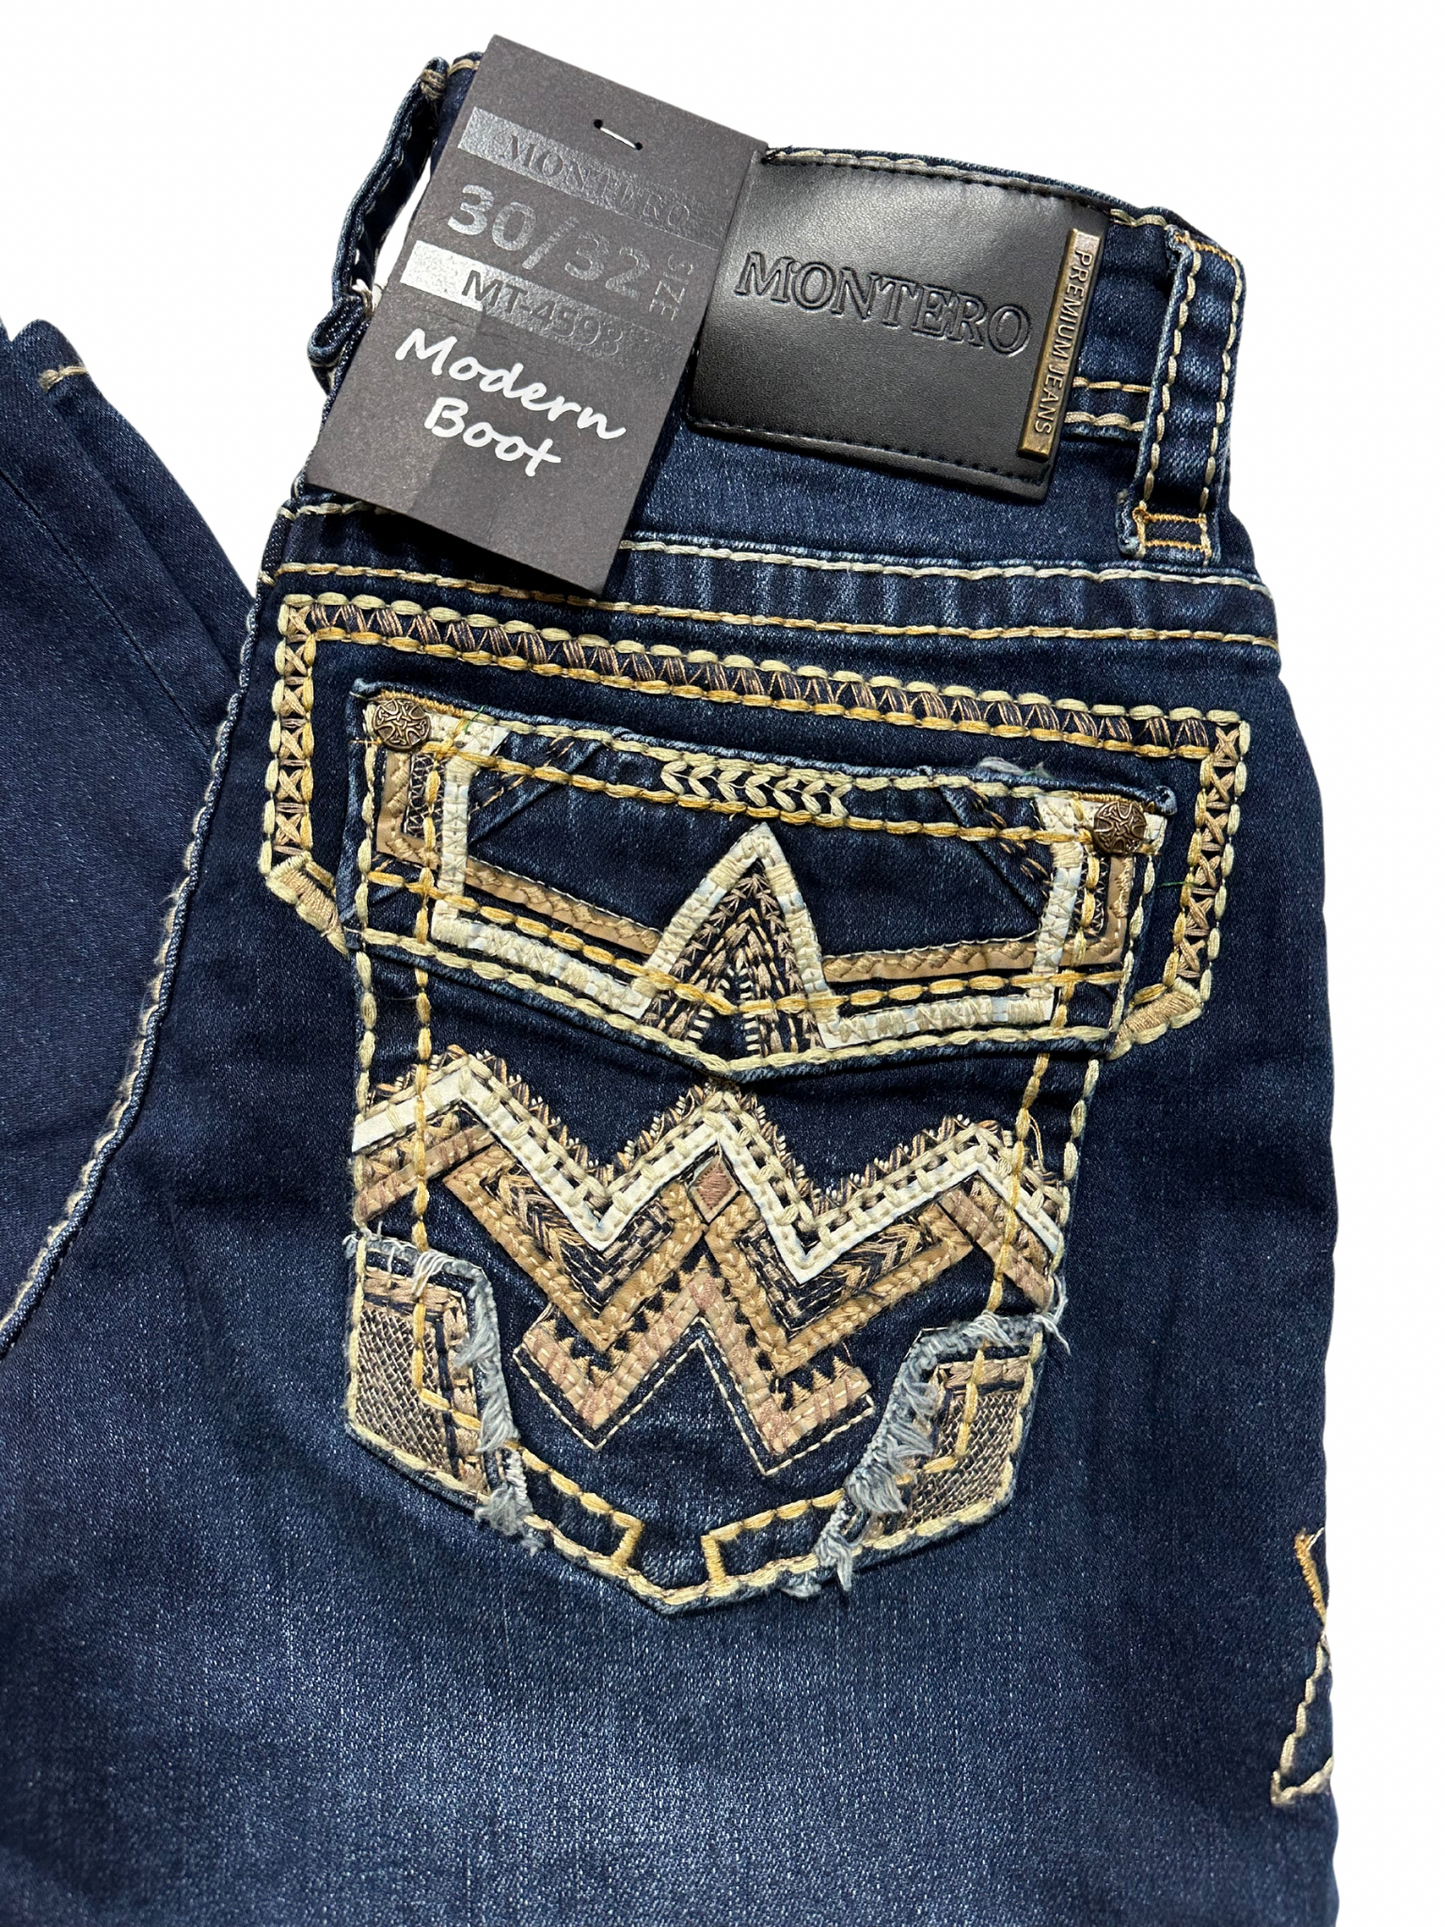 Montero Denim Pointed Stitched Pocket Dark Blue Modern Boot Jean